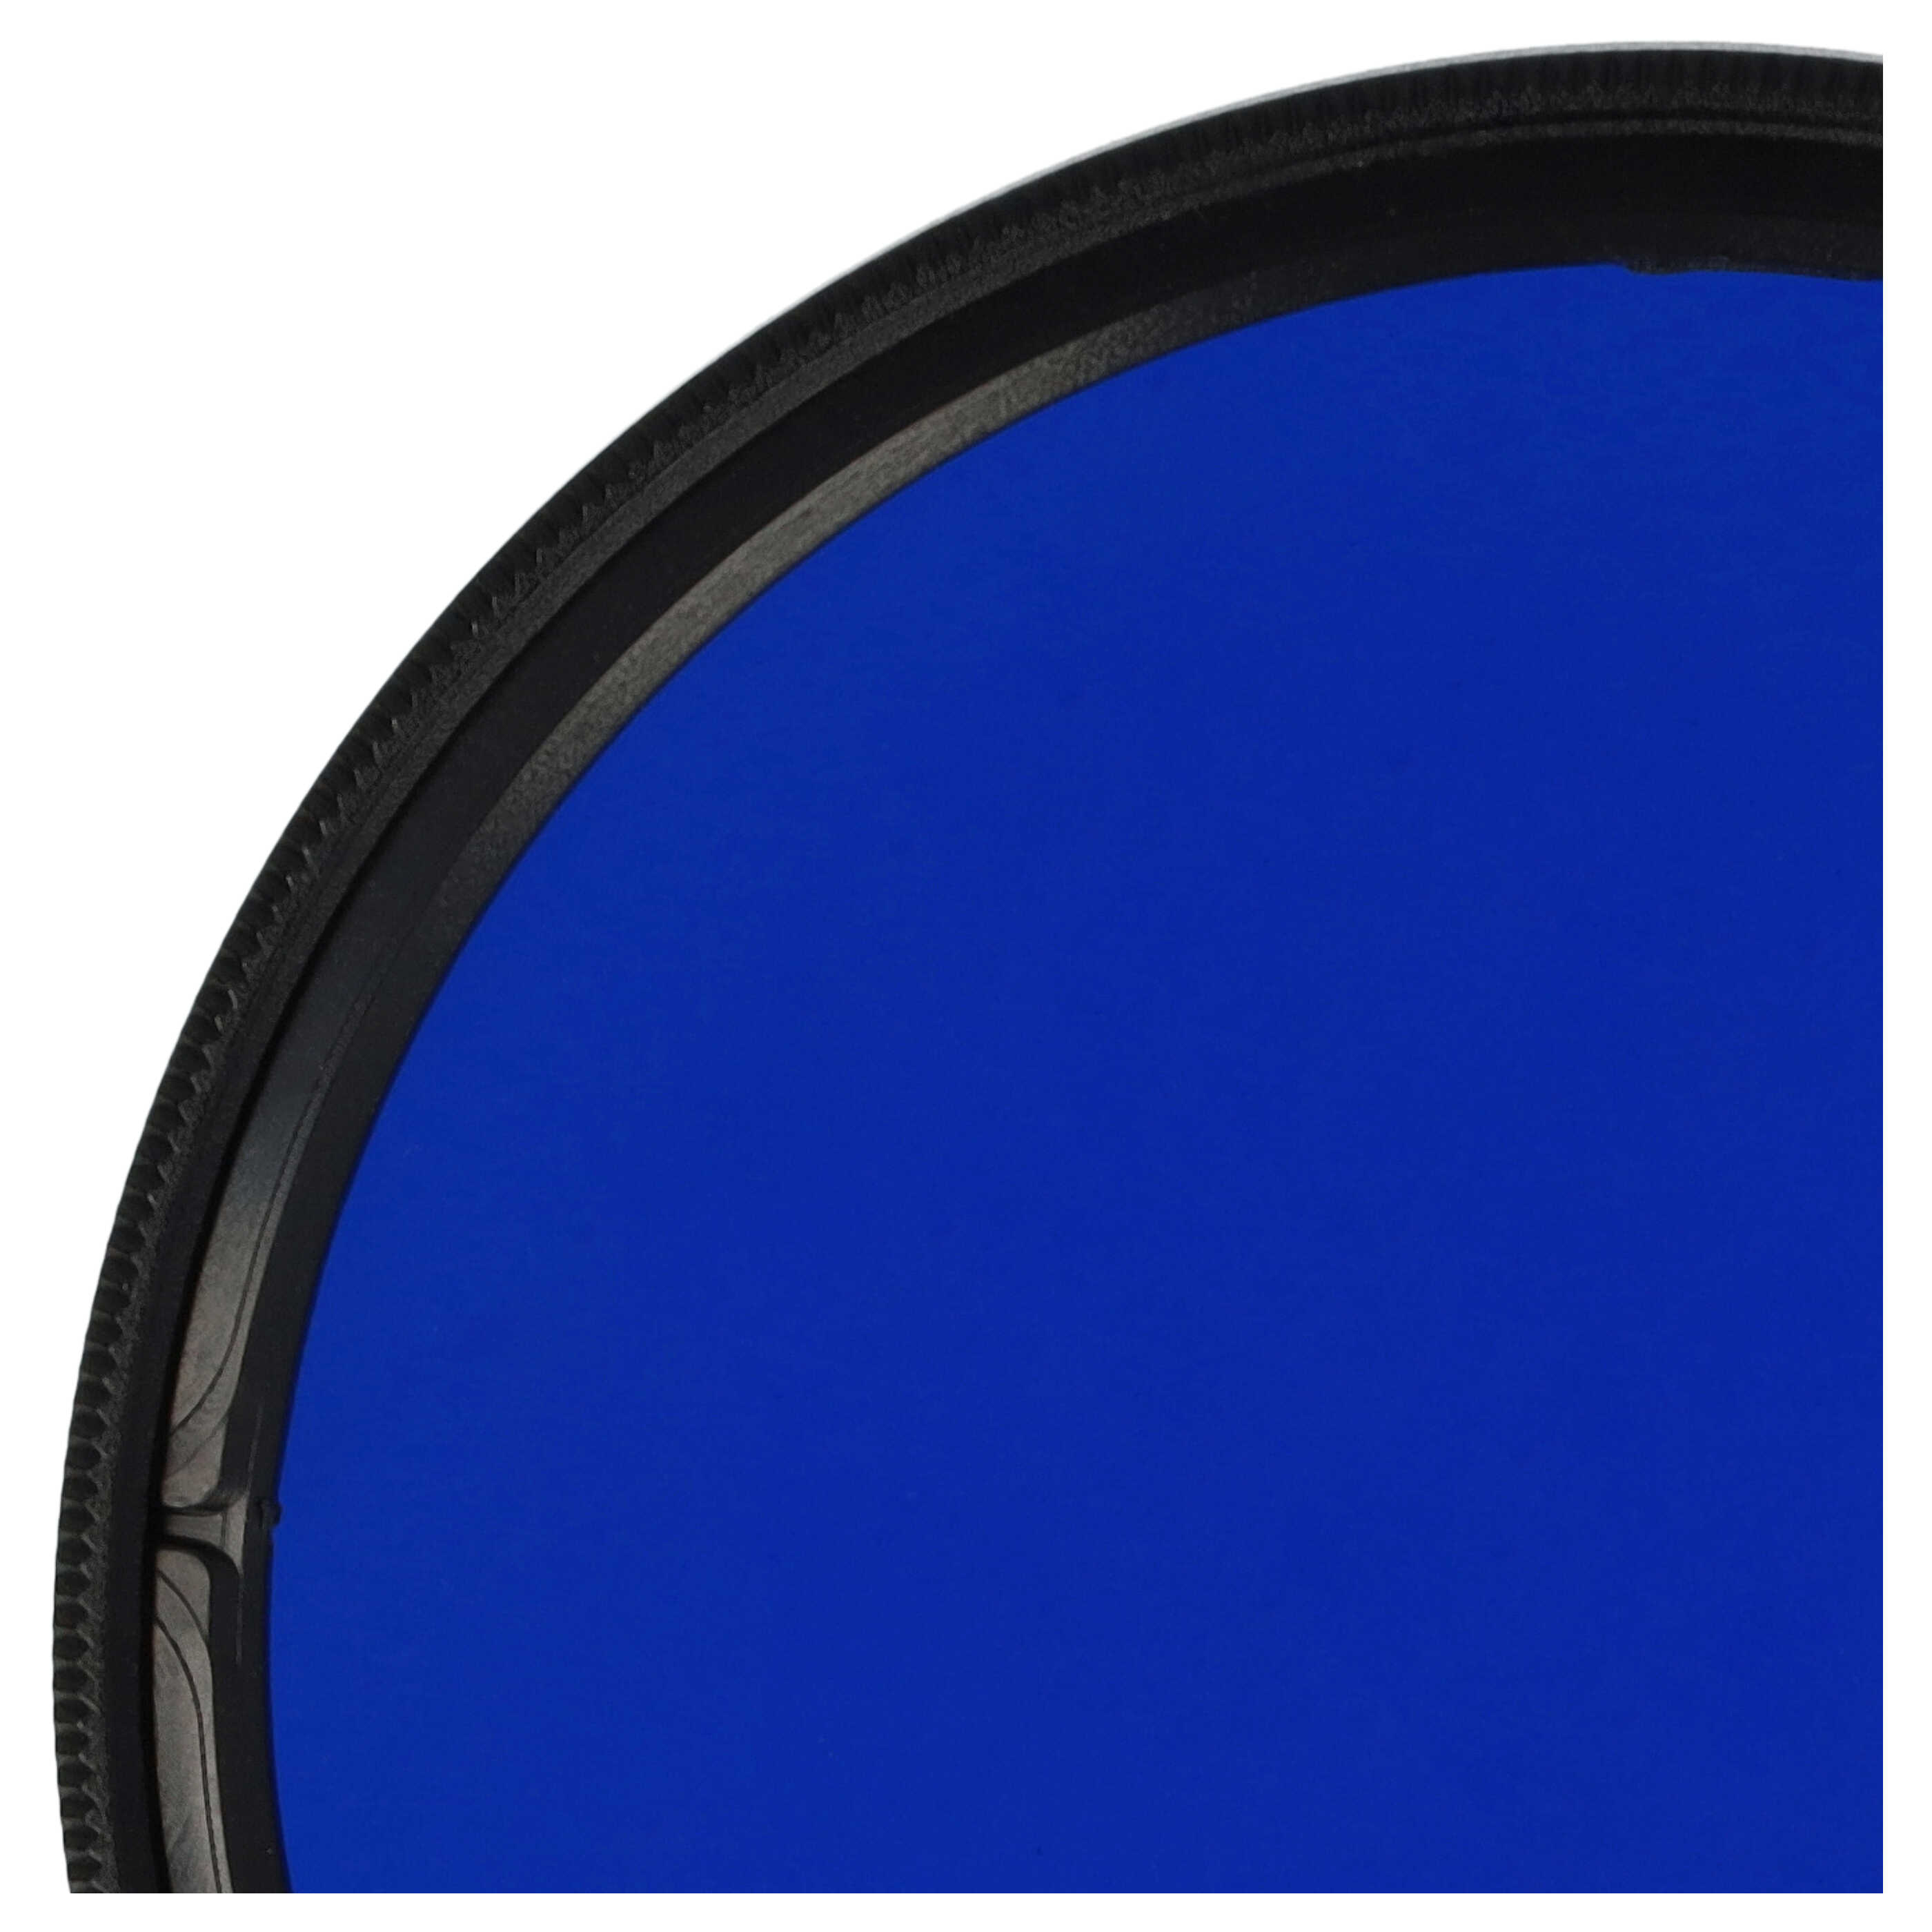 Filtro colorato per obiettivi fotocamera con filettatura da 58 mm - filtro blu